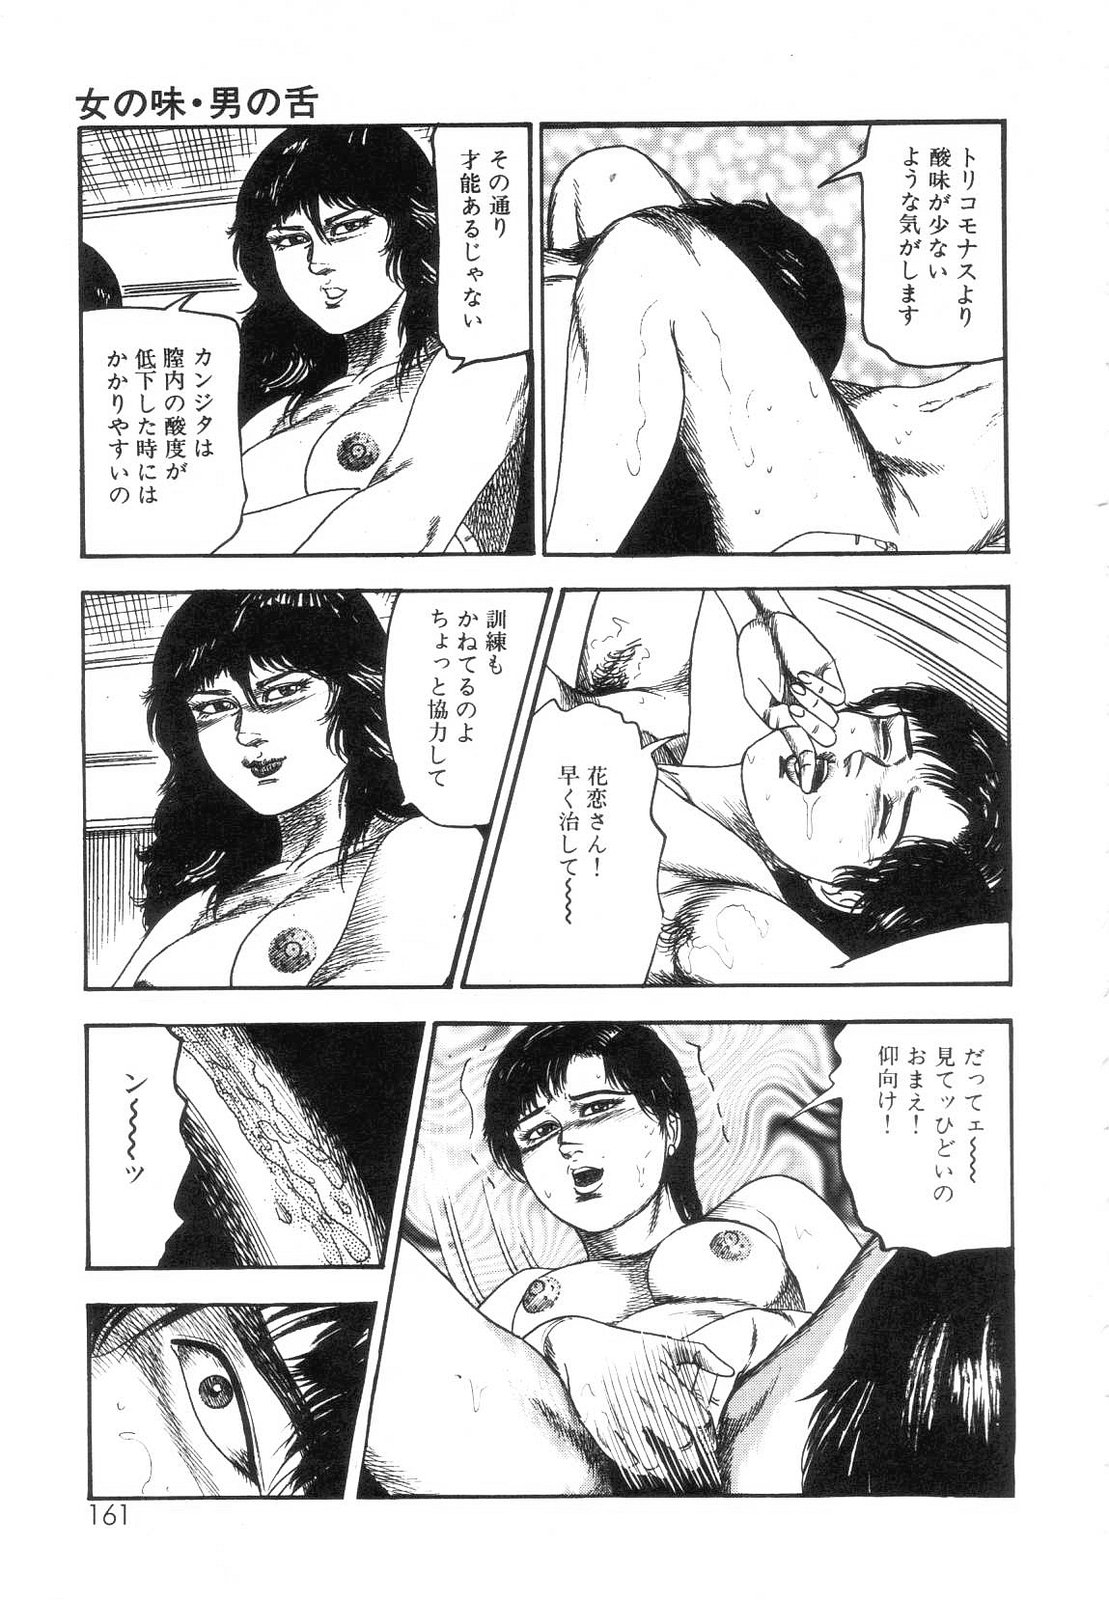 [Sanjou Tomomi] Shiro no Mokushiroku Vol. 7 - Shiiku Ningyou Erika no Shou 162